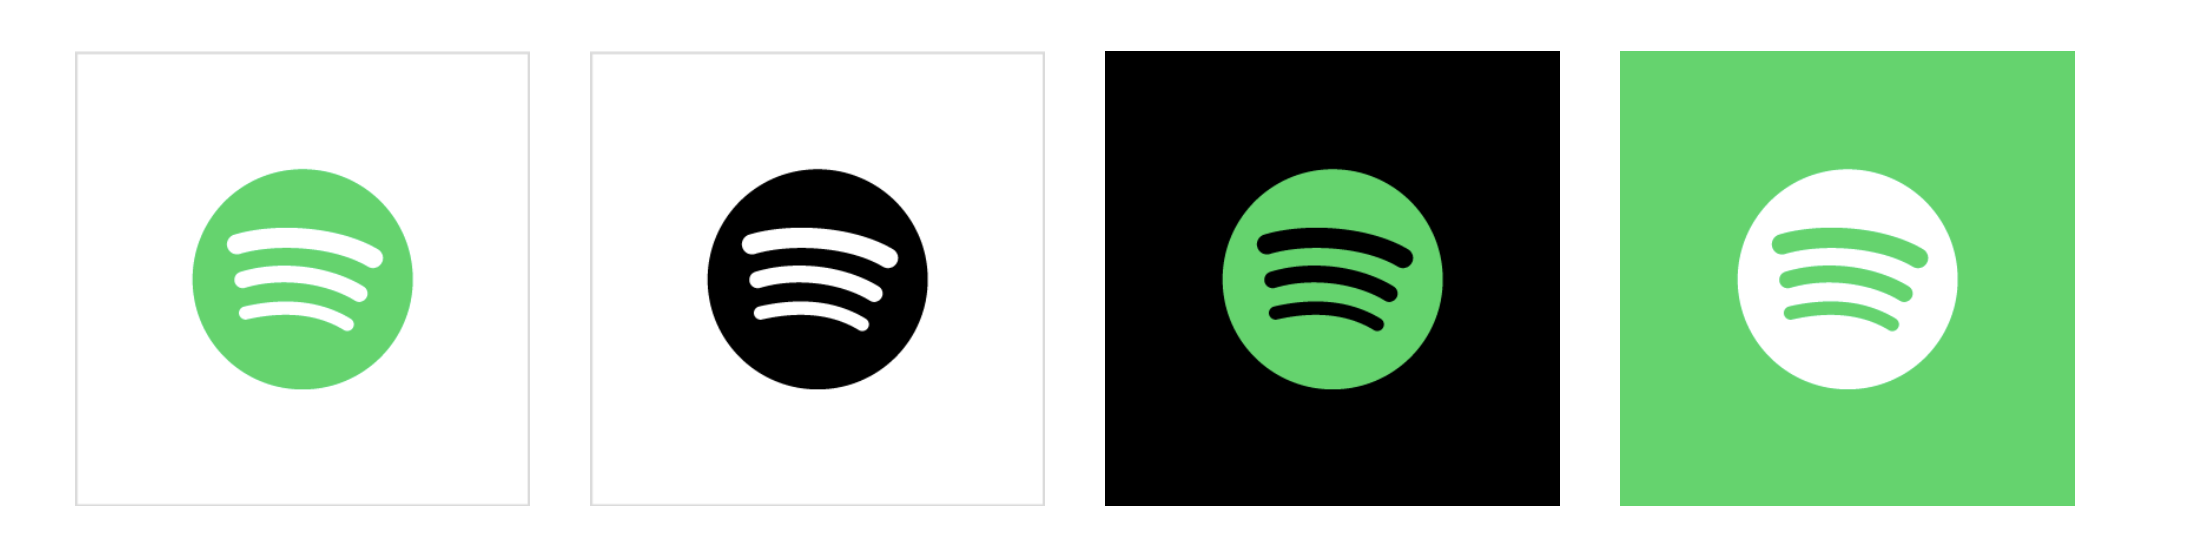 Spotify Logos